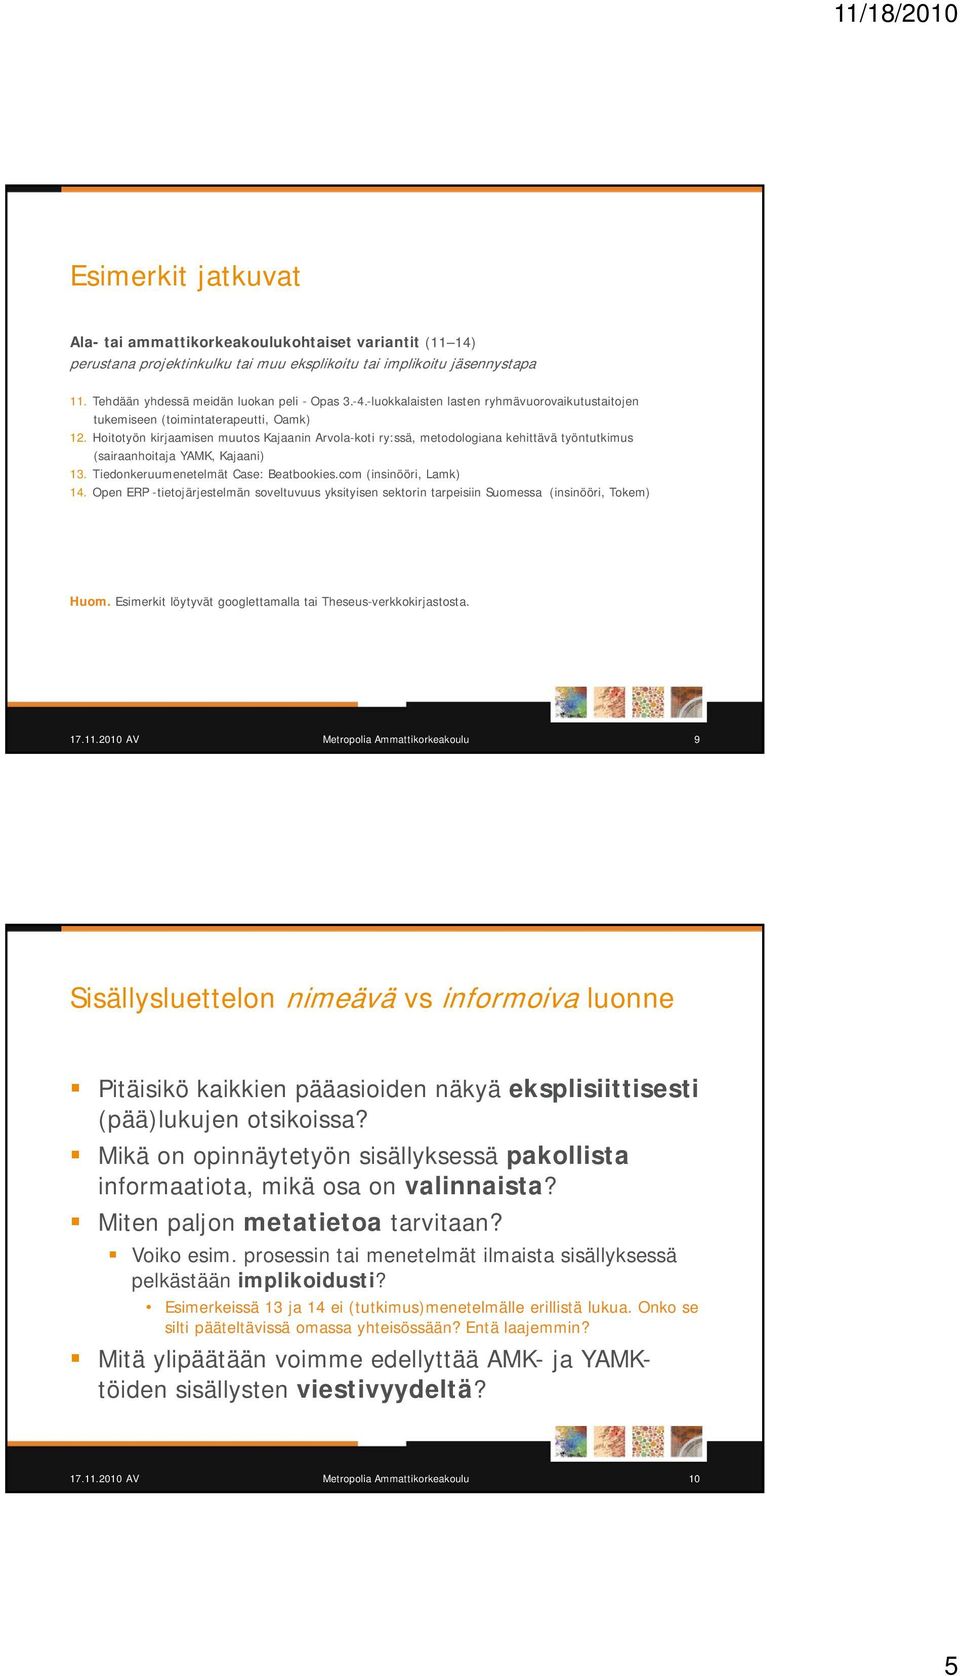 Hoitotyön kirjaamisen muutos Kajaanin Arvola-koti ry:ssä, metodologiana kehittävä työntutkimus (sairaanhoitaja YAMK, Kajaani) 13. Tiedonkeruumenetelmät Case: Beatbookies.com (insinööri, Lamk) 14.